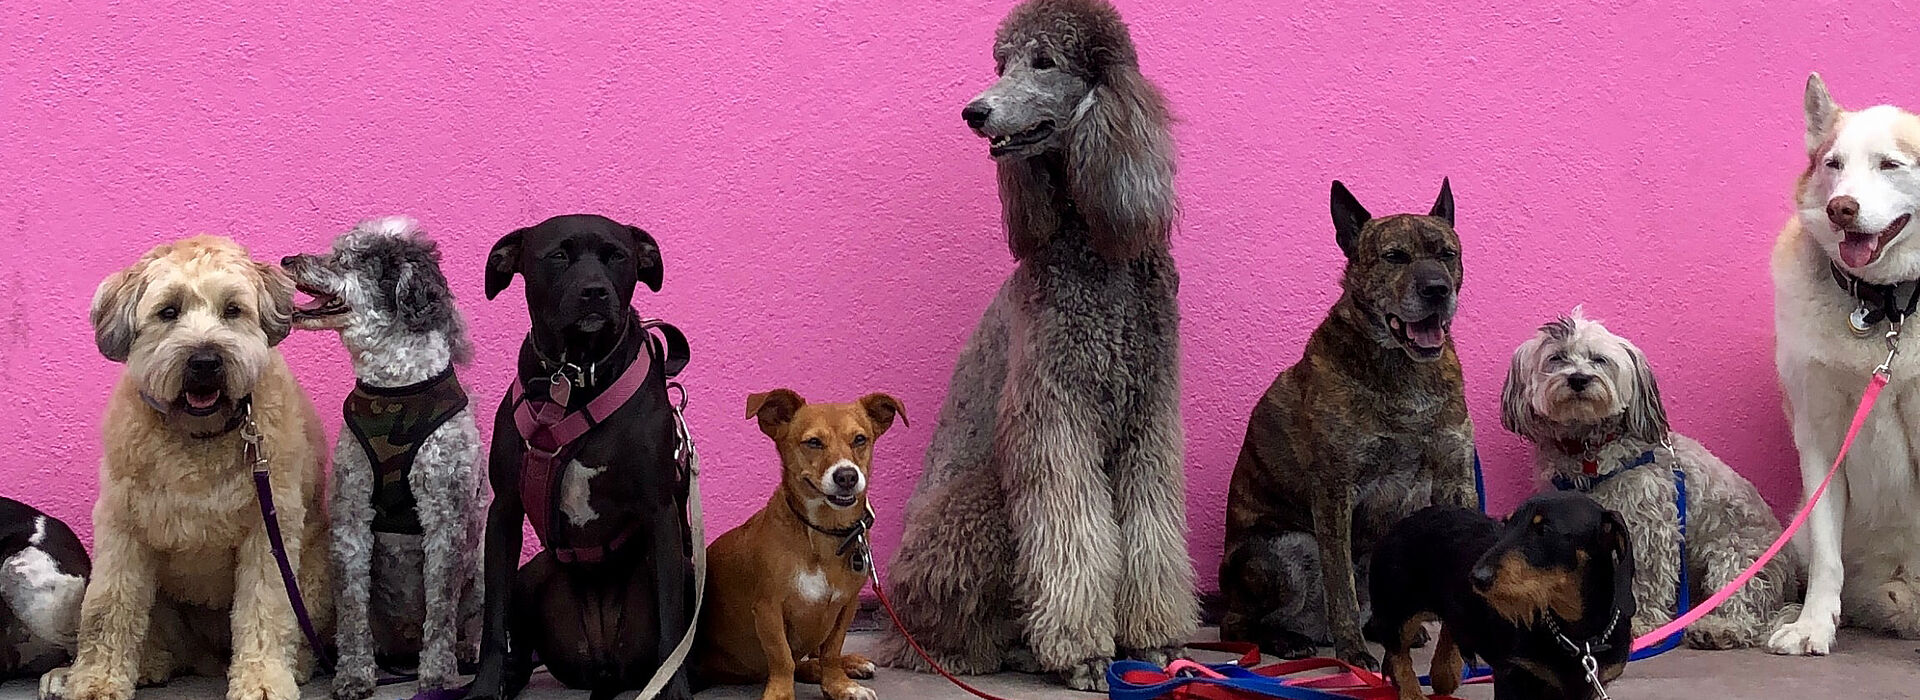 Viele verschiedenen Hunde vor einer pinken Wand